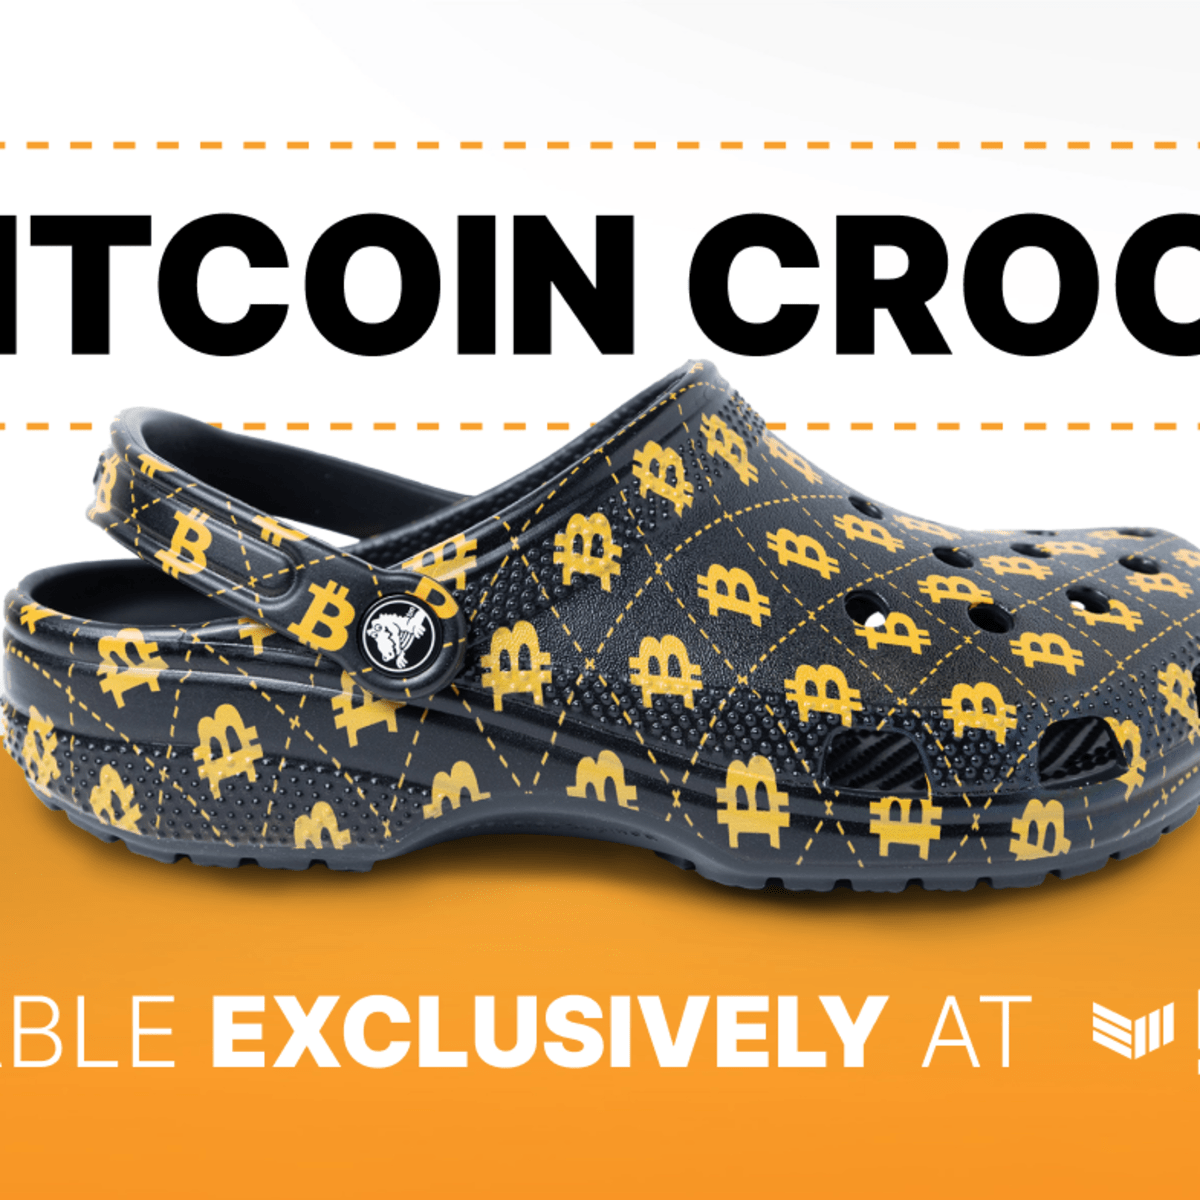 Bitcoin Magazine Launches Bitcoin Crocs - Bitcoin Magazine